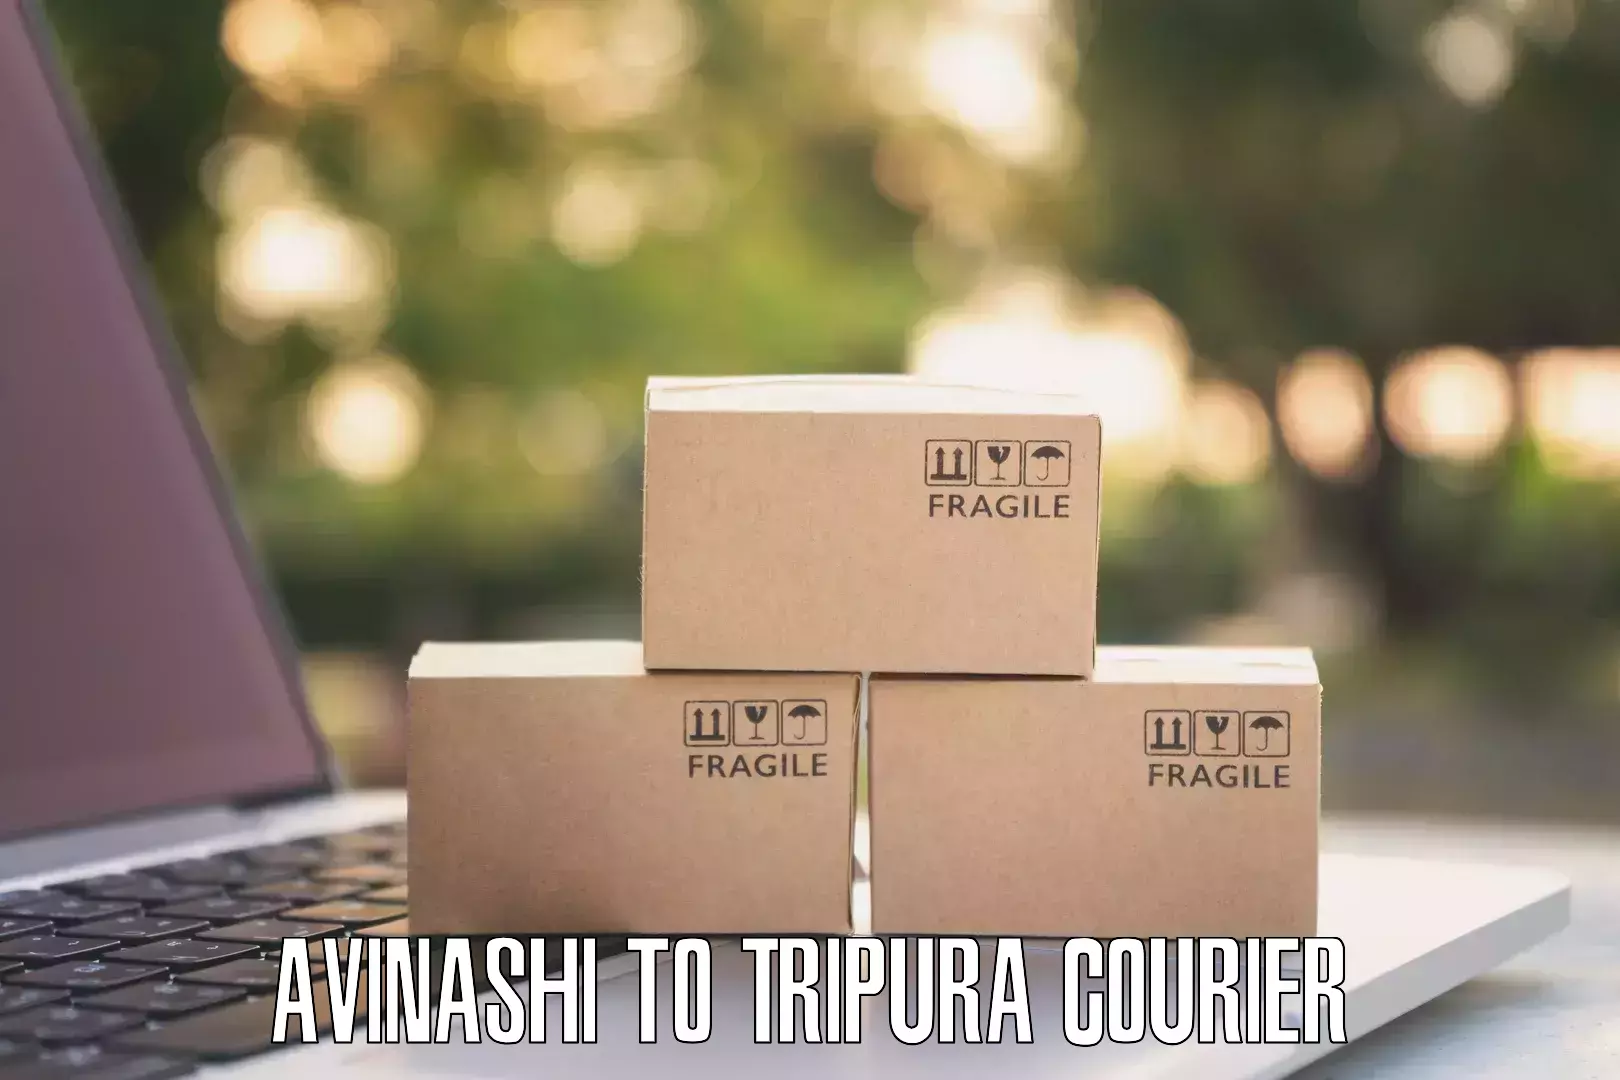 Flexible shipping options Avinashi to IIIT Agartala